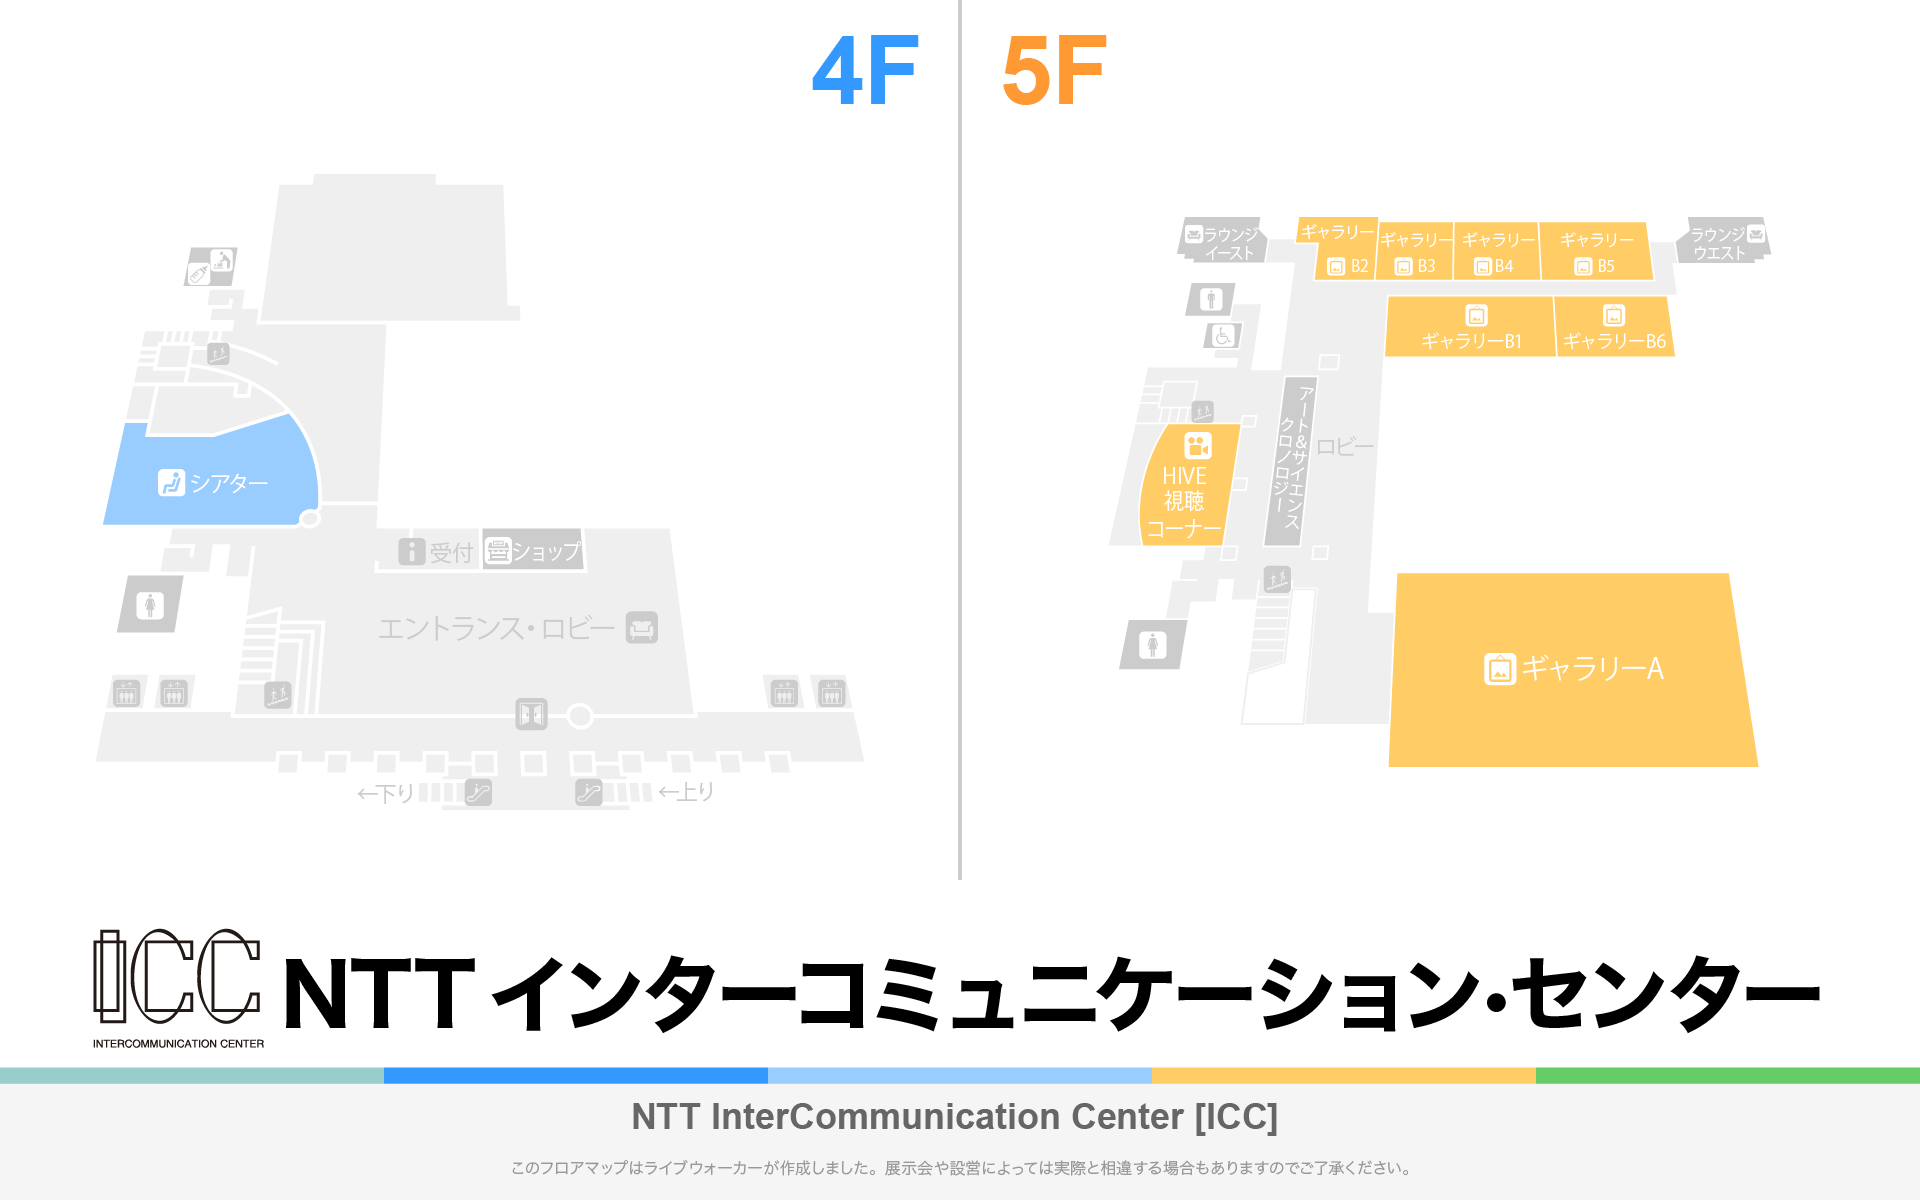 NTT ICCのフロアマップ